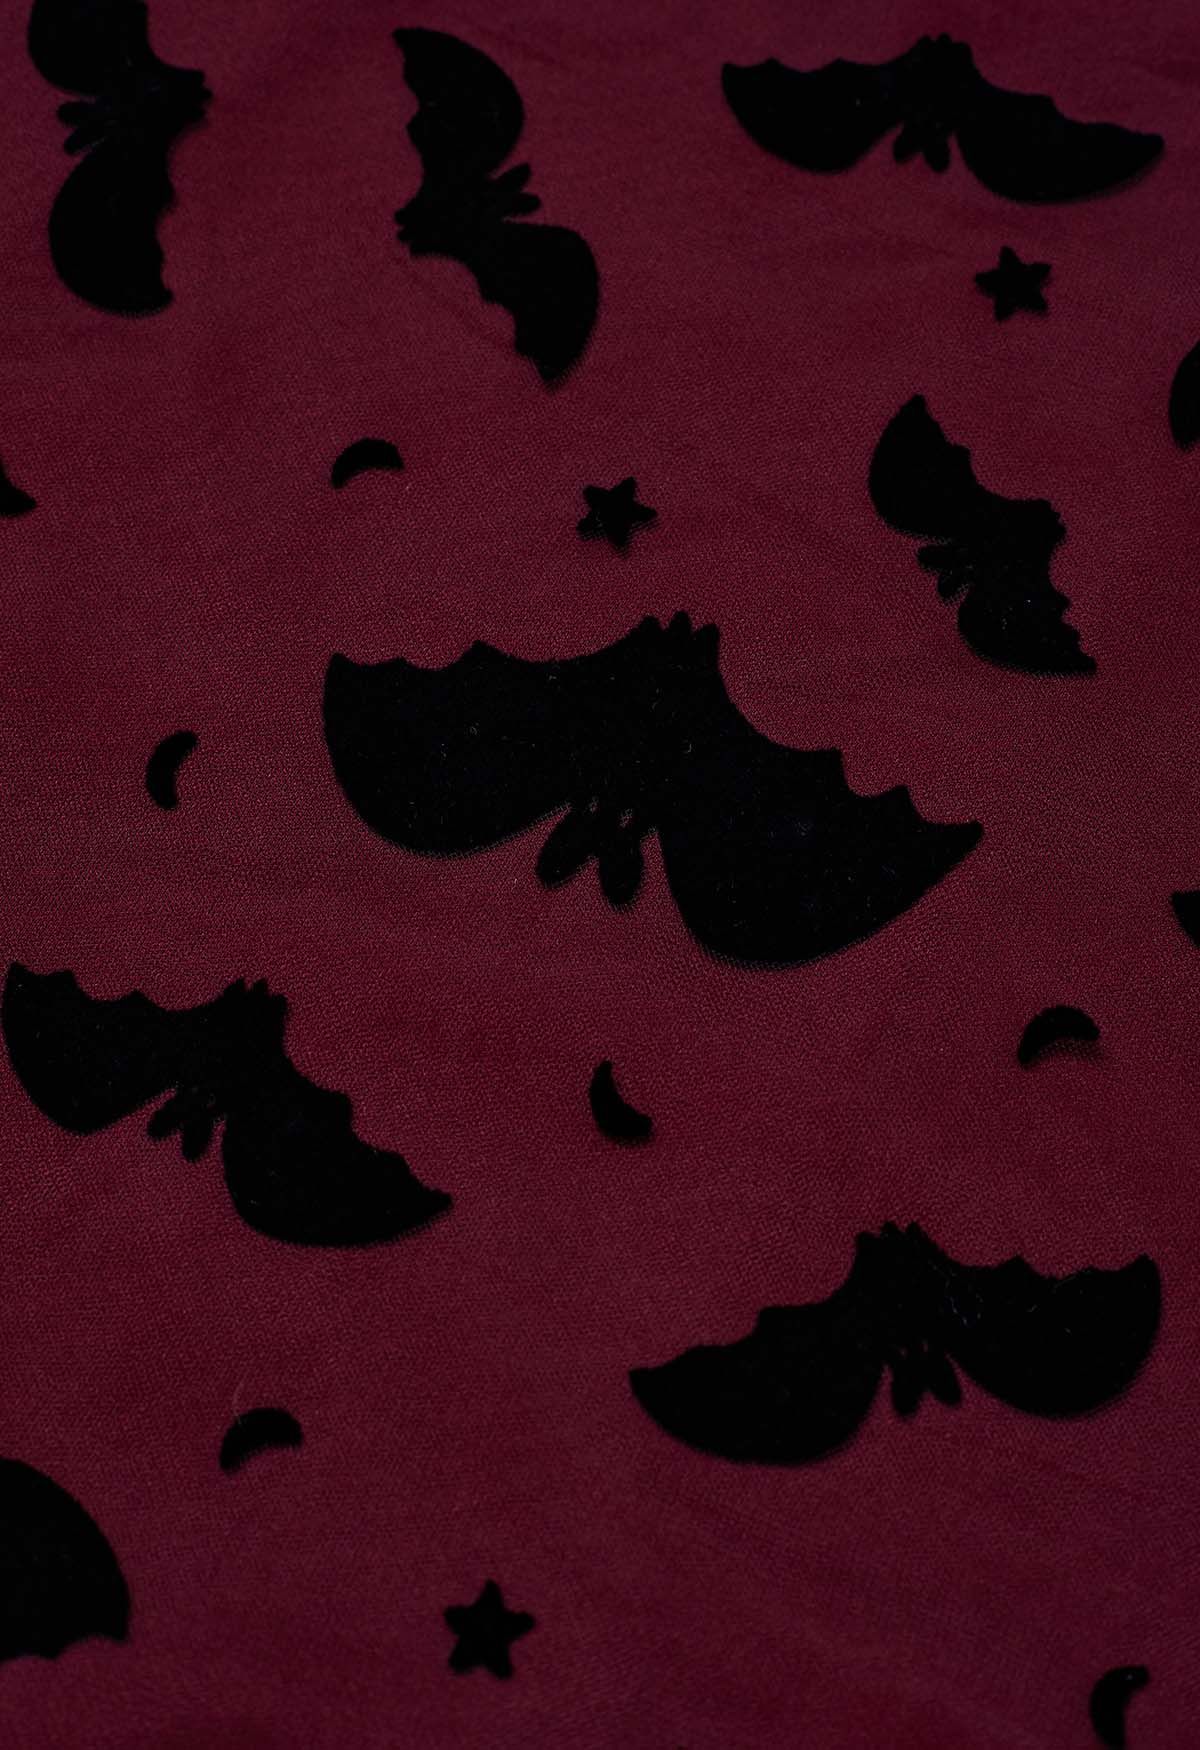 絲絨蝙蝠圖案薄紗中長半身裙-酒紅色